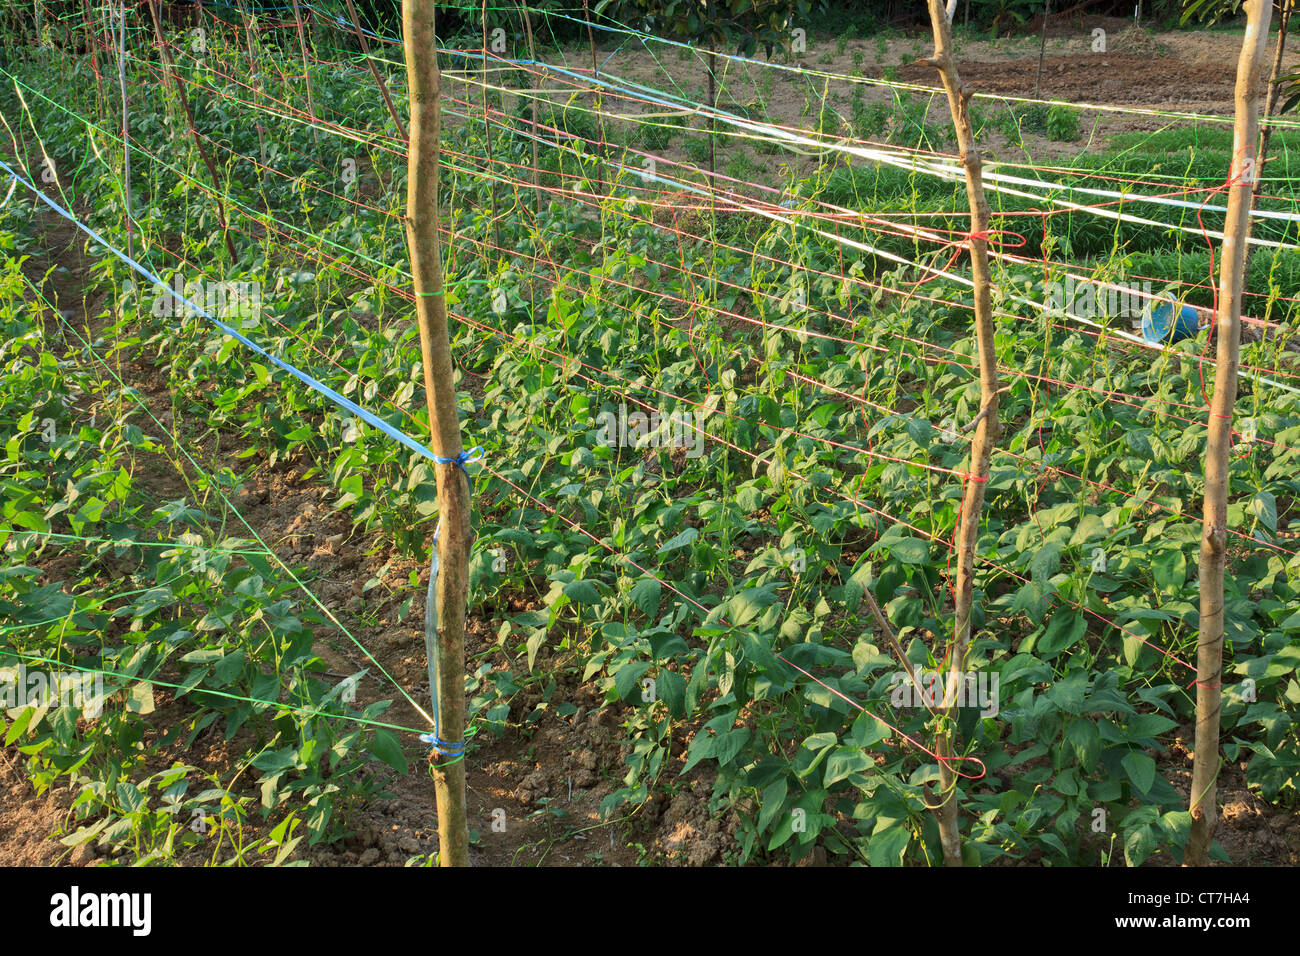 Cowpea or yard long bean (Vigna sinensis) vegetable farm in Thailand Stock Photo